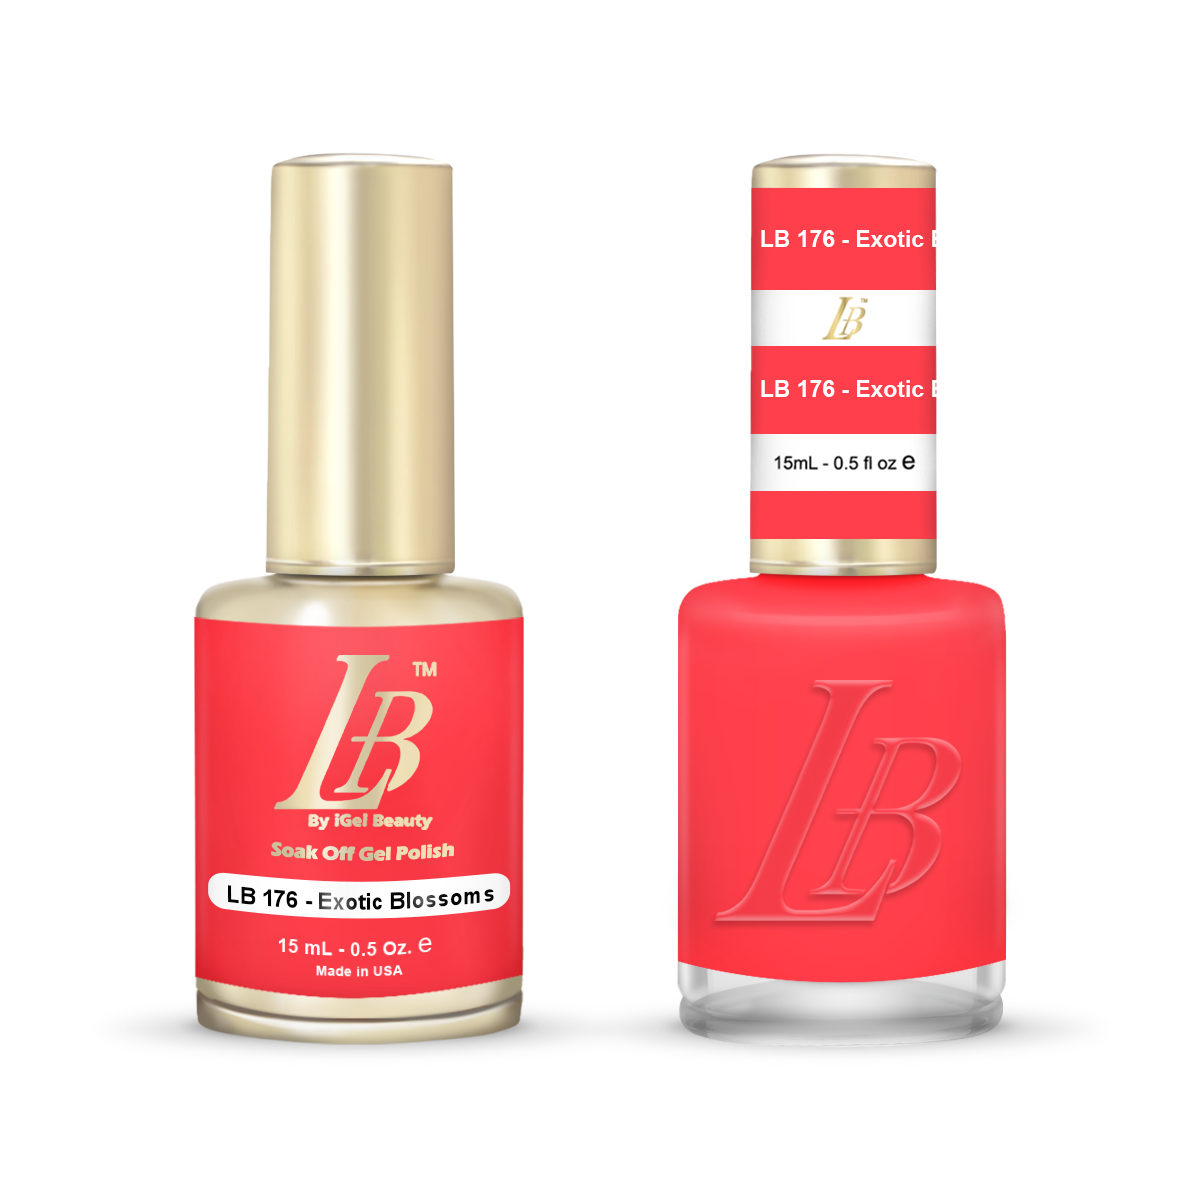 LB Duo - LB176 Exotic Blossoms